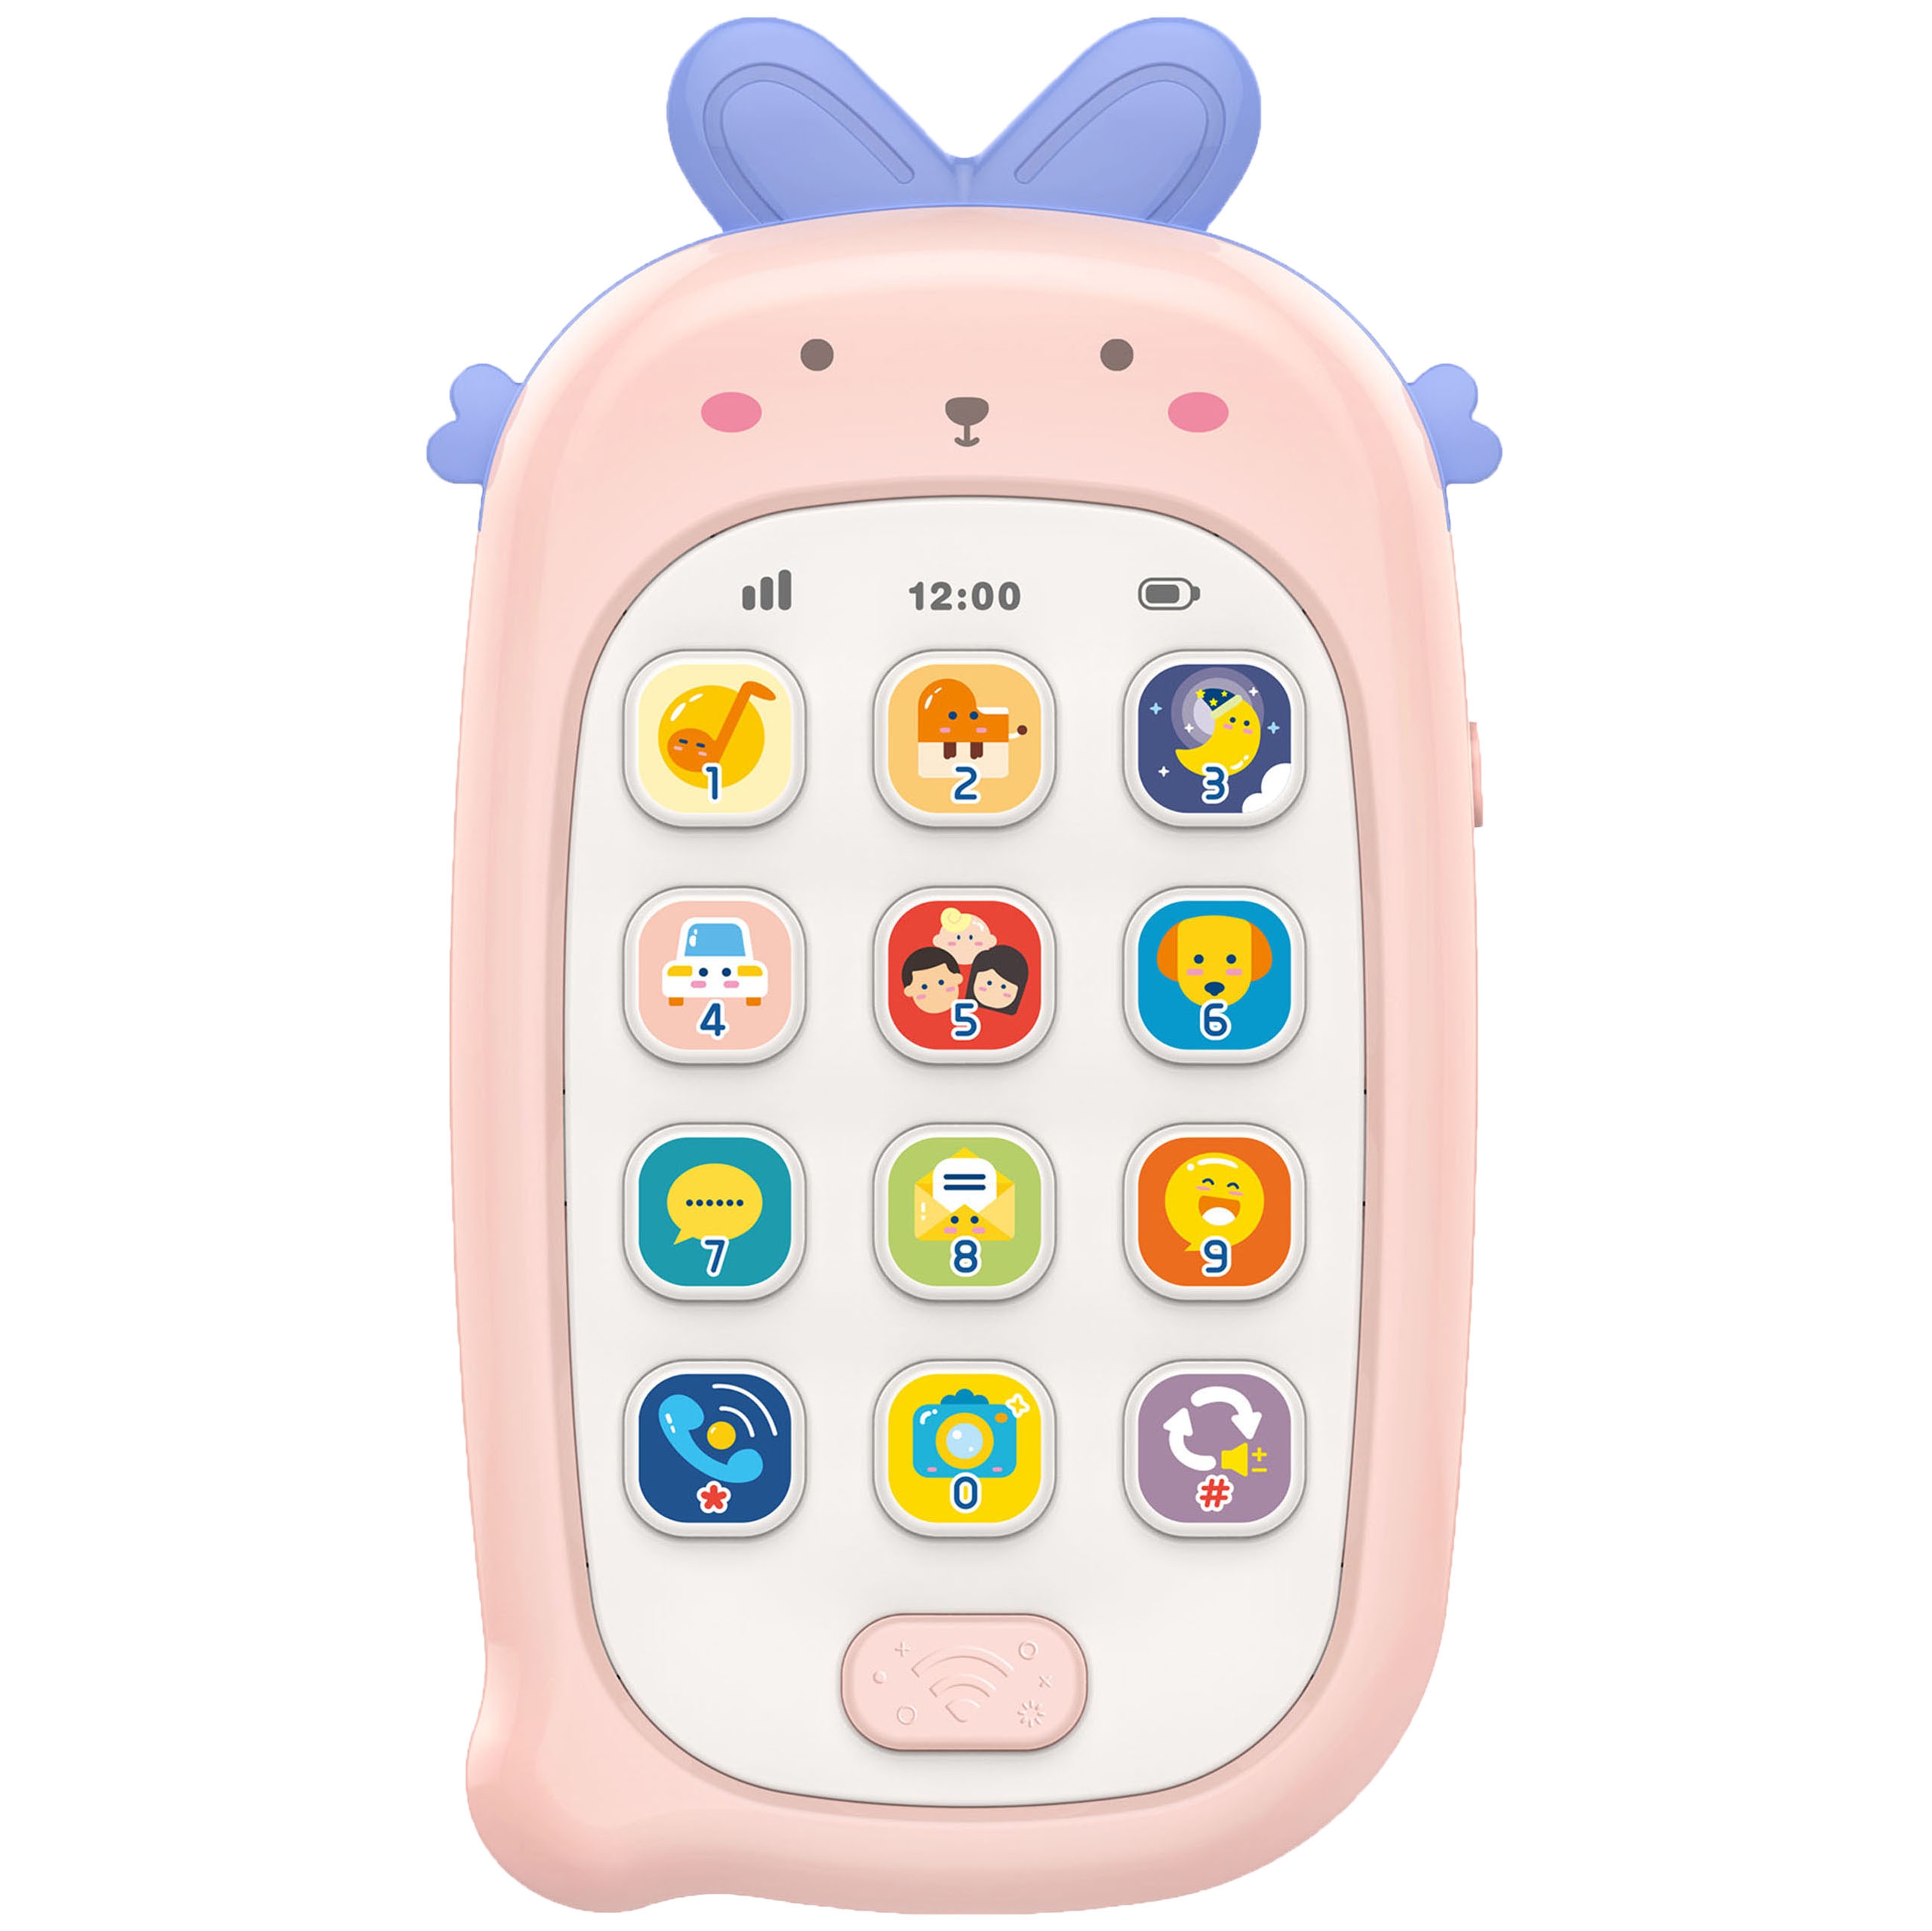 Baby telefonik interaktywny komórka z dźwiękami, zabawka dla dzieci, Woopie